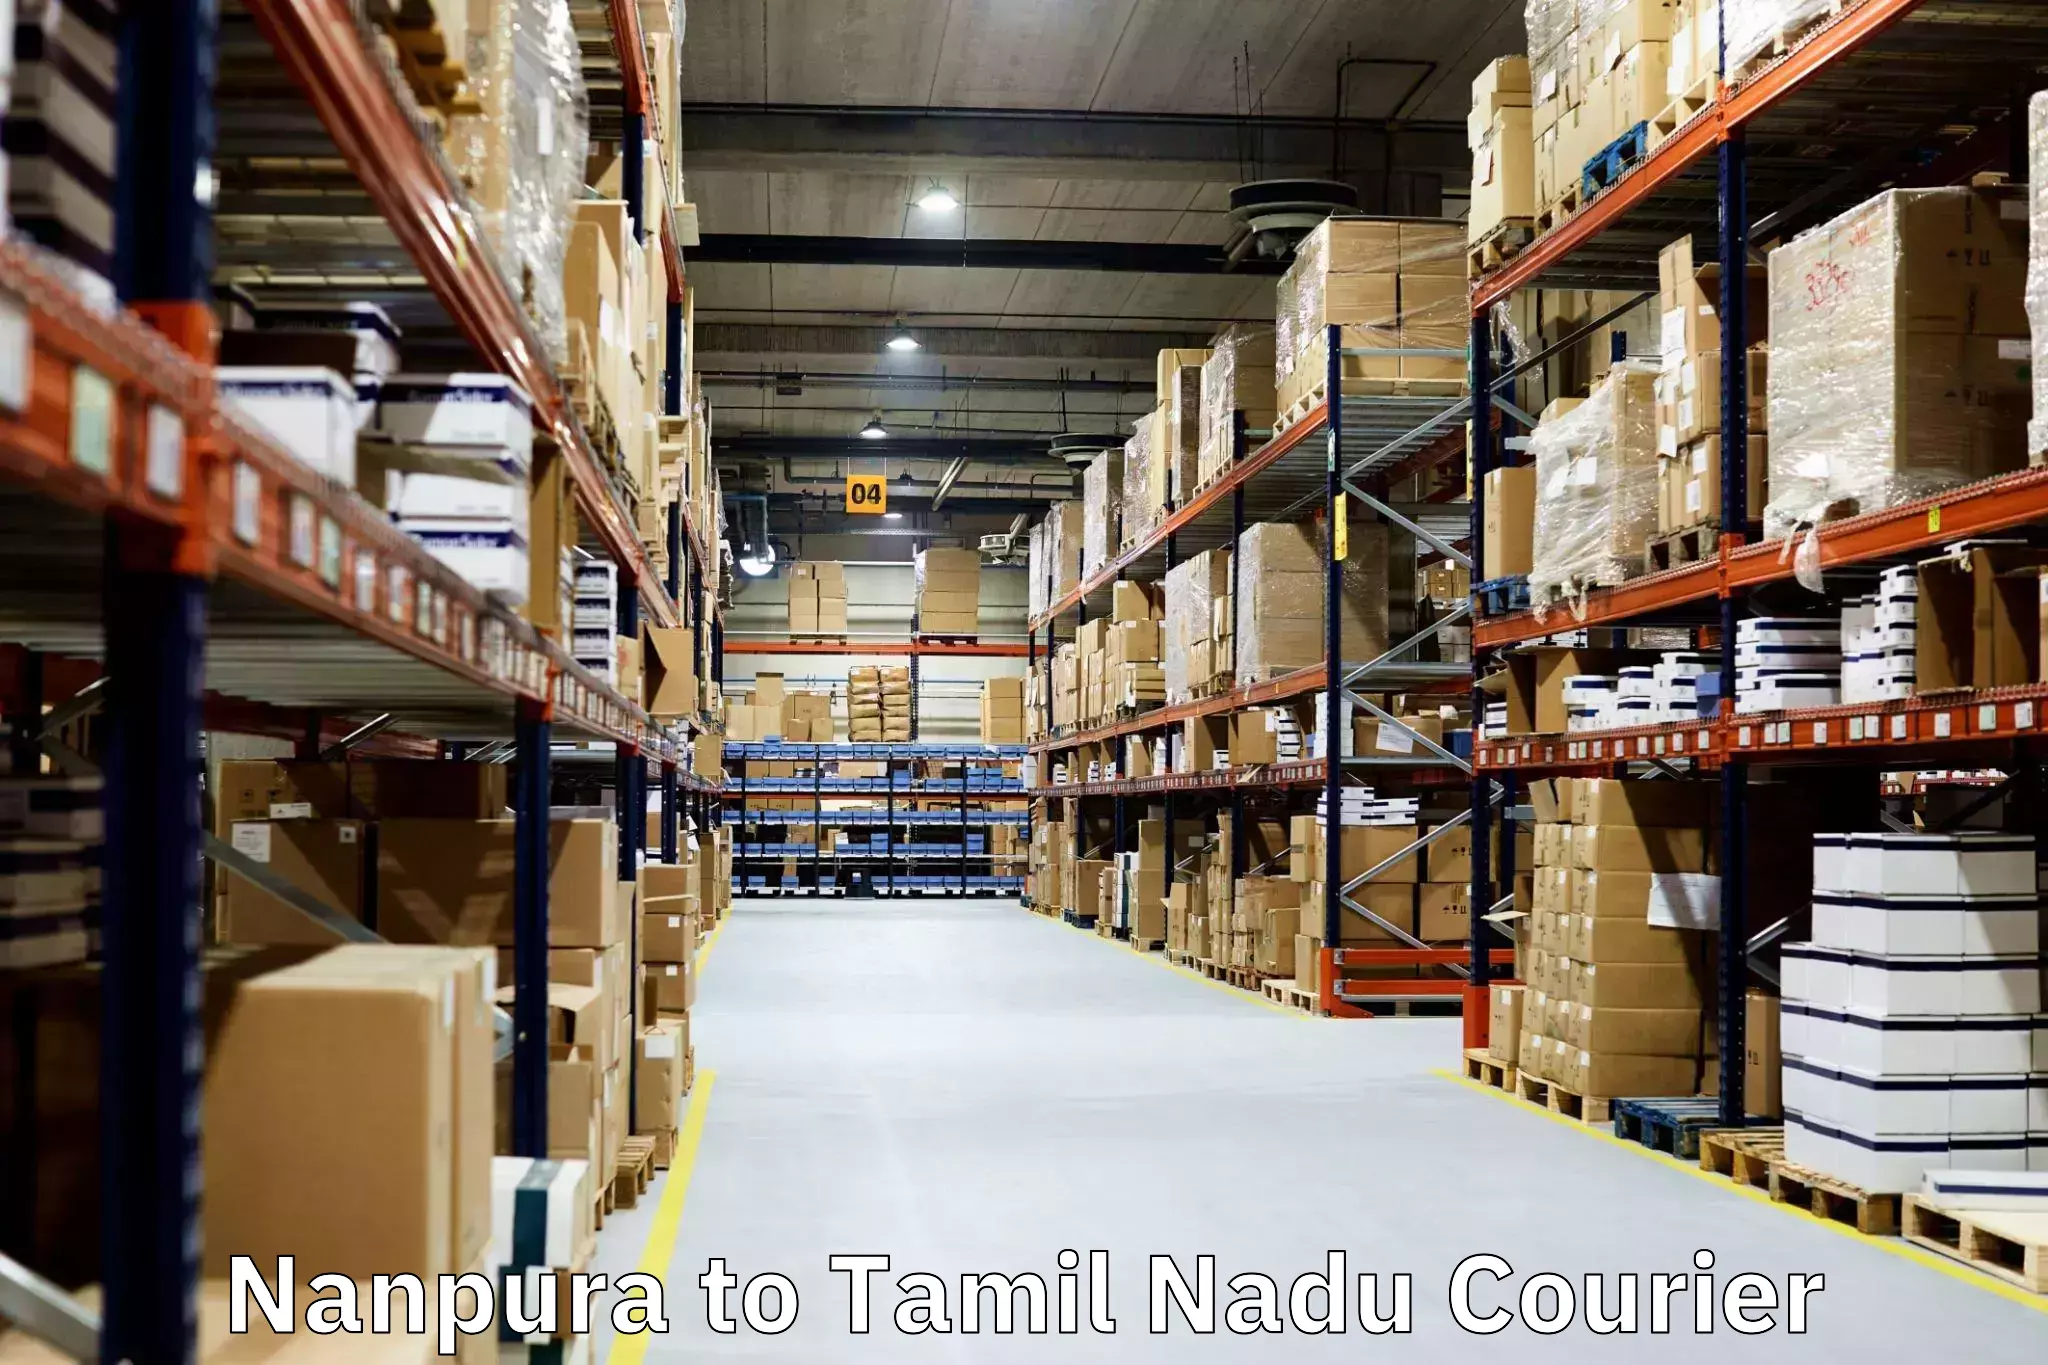 Furniture relocation services Nanpura to Cuddalore